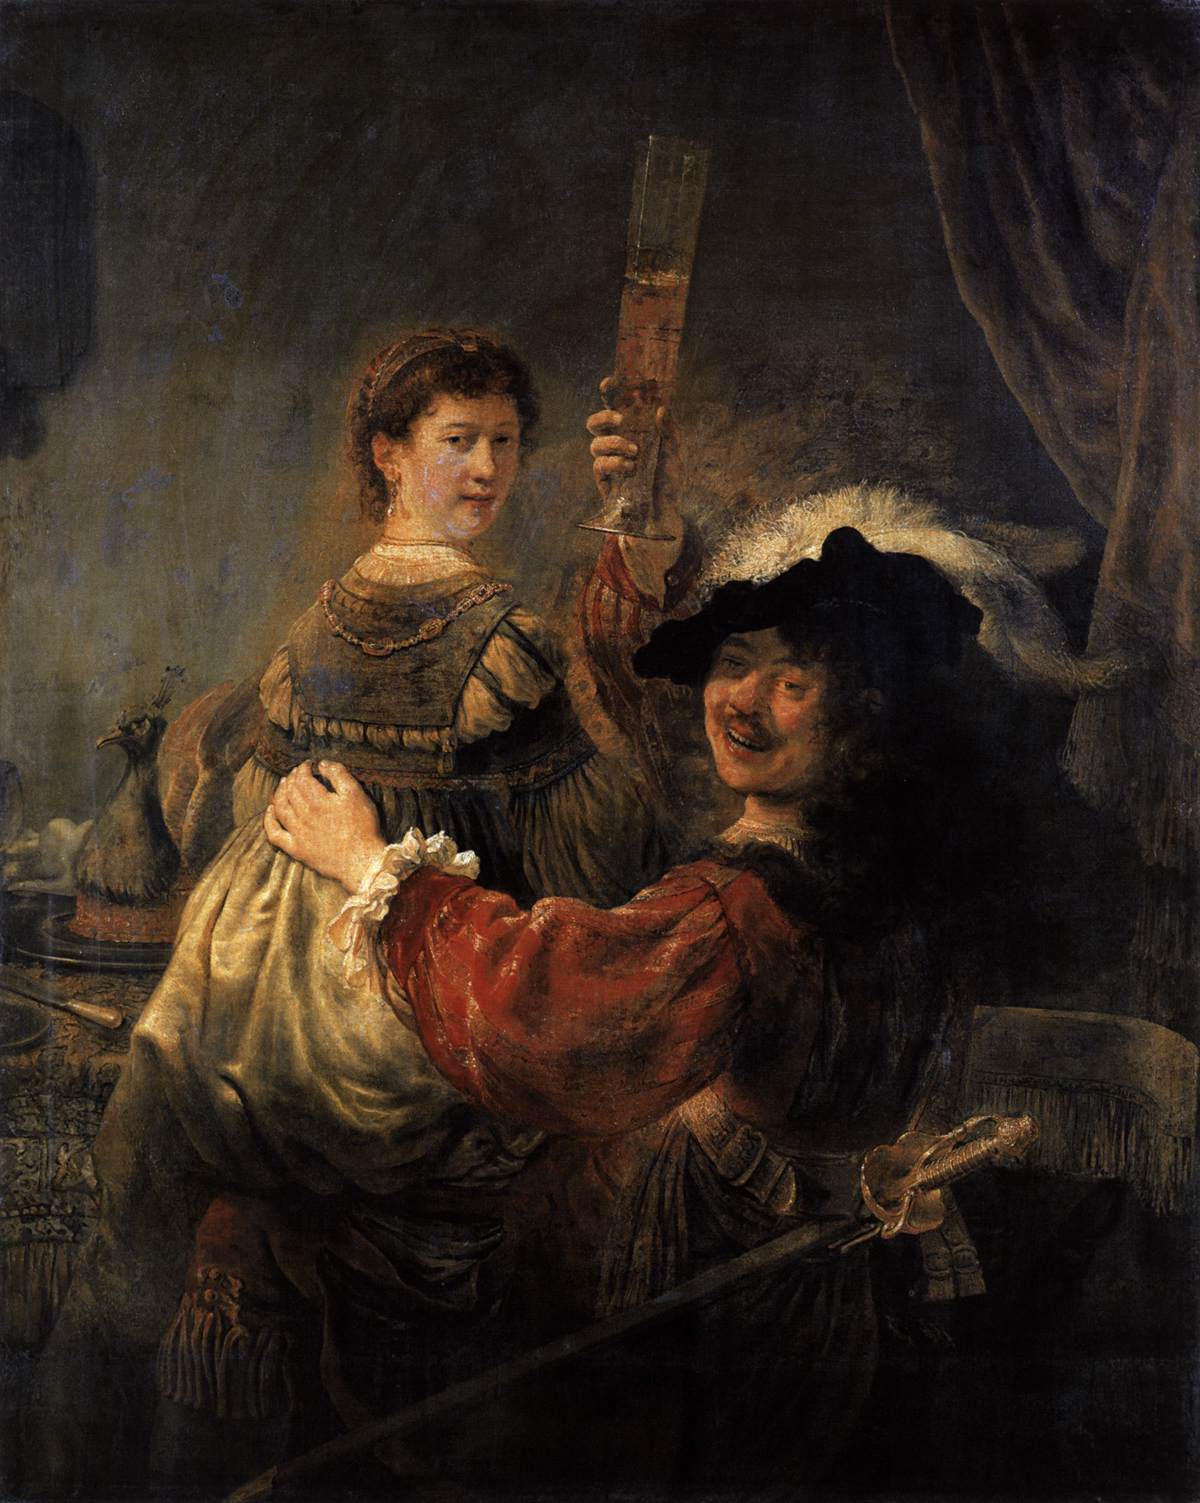 Rembrandt et Saskia dans la scène du fils prodigue dans la taverne